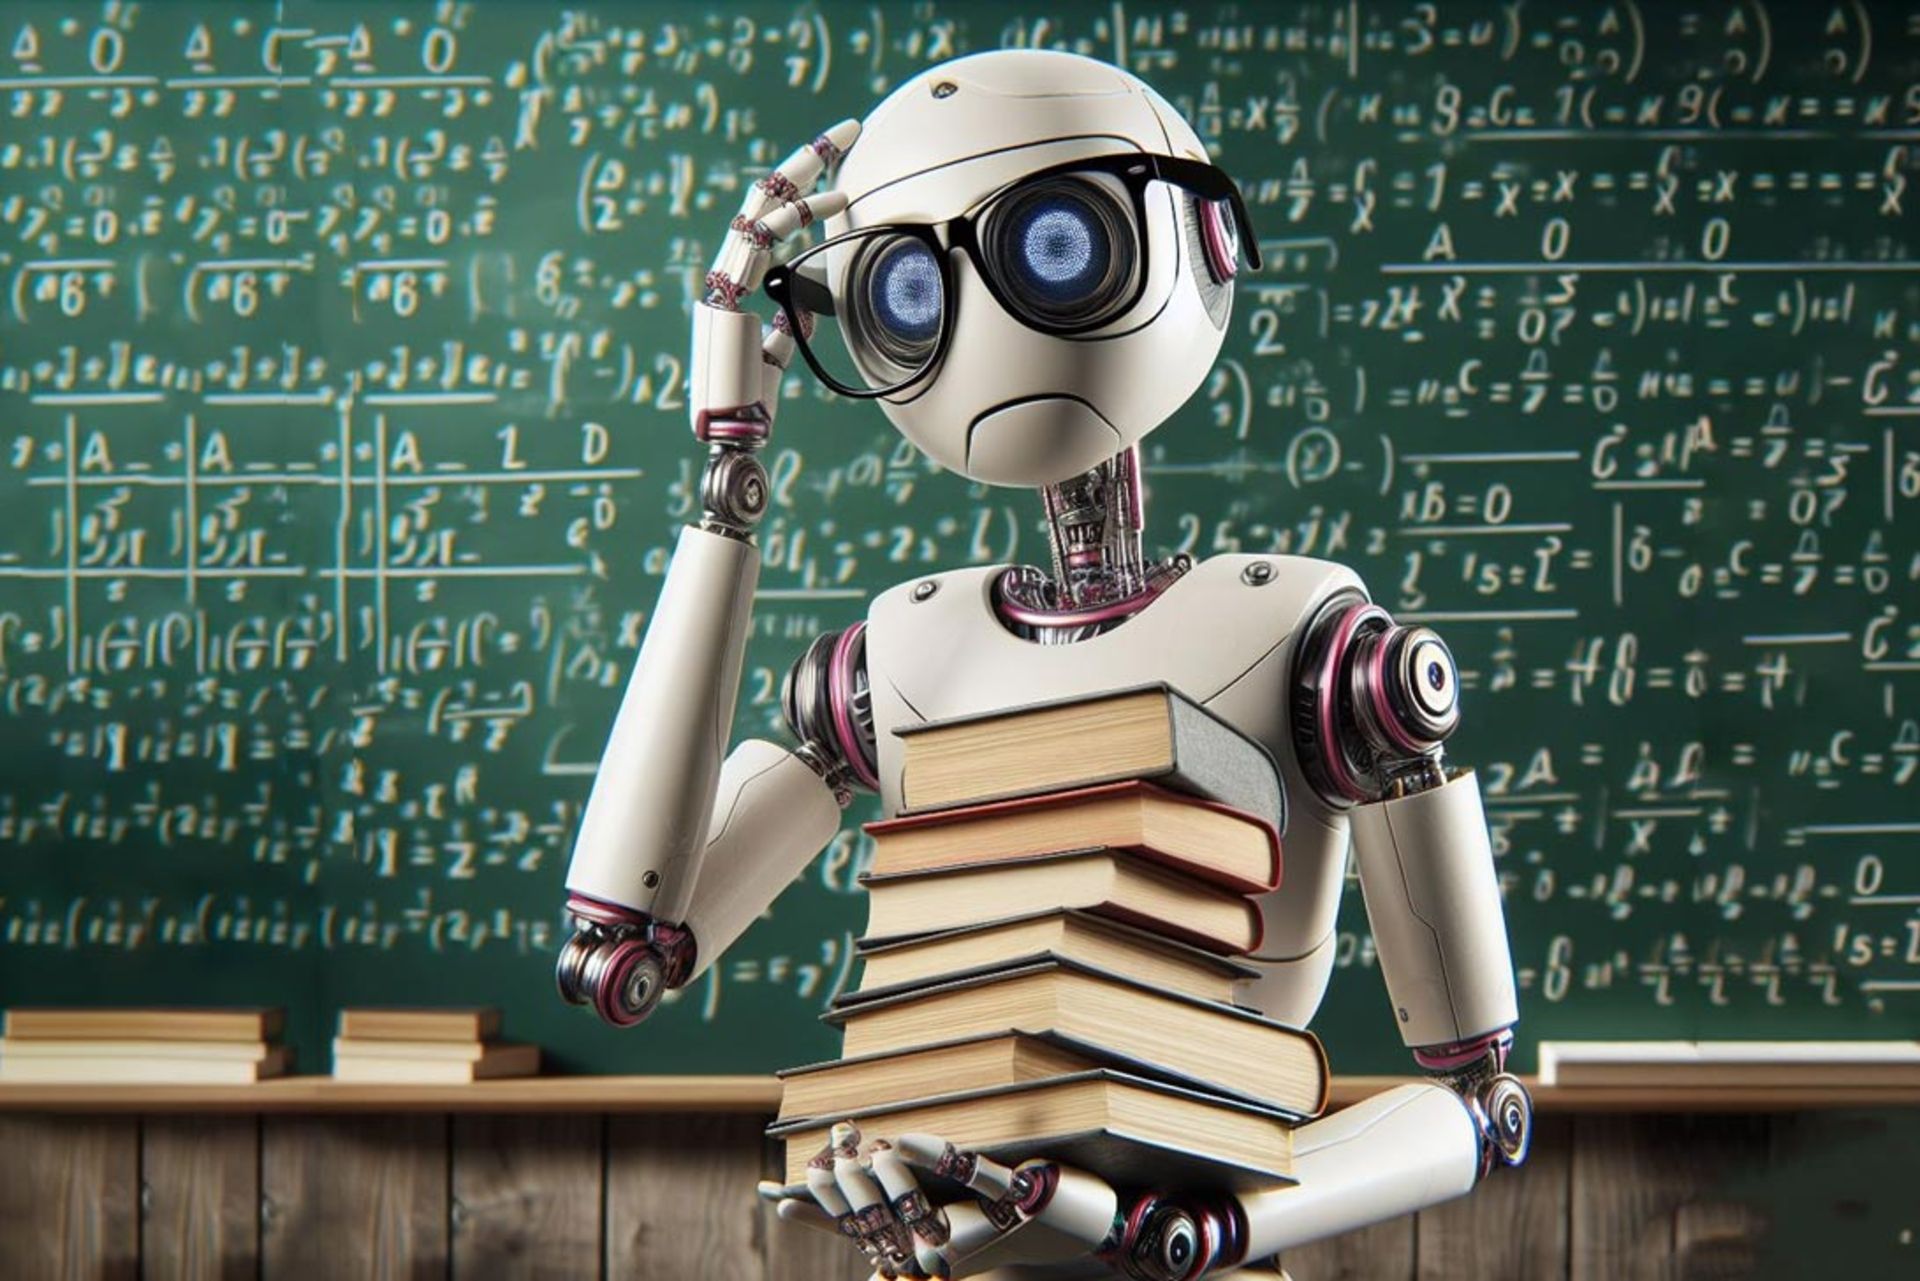 یک ربات در کلاس درس کتاب نگه داشته در حال فکر است